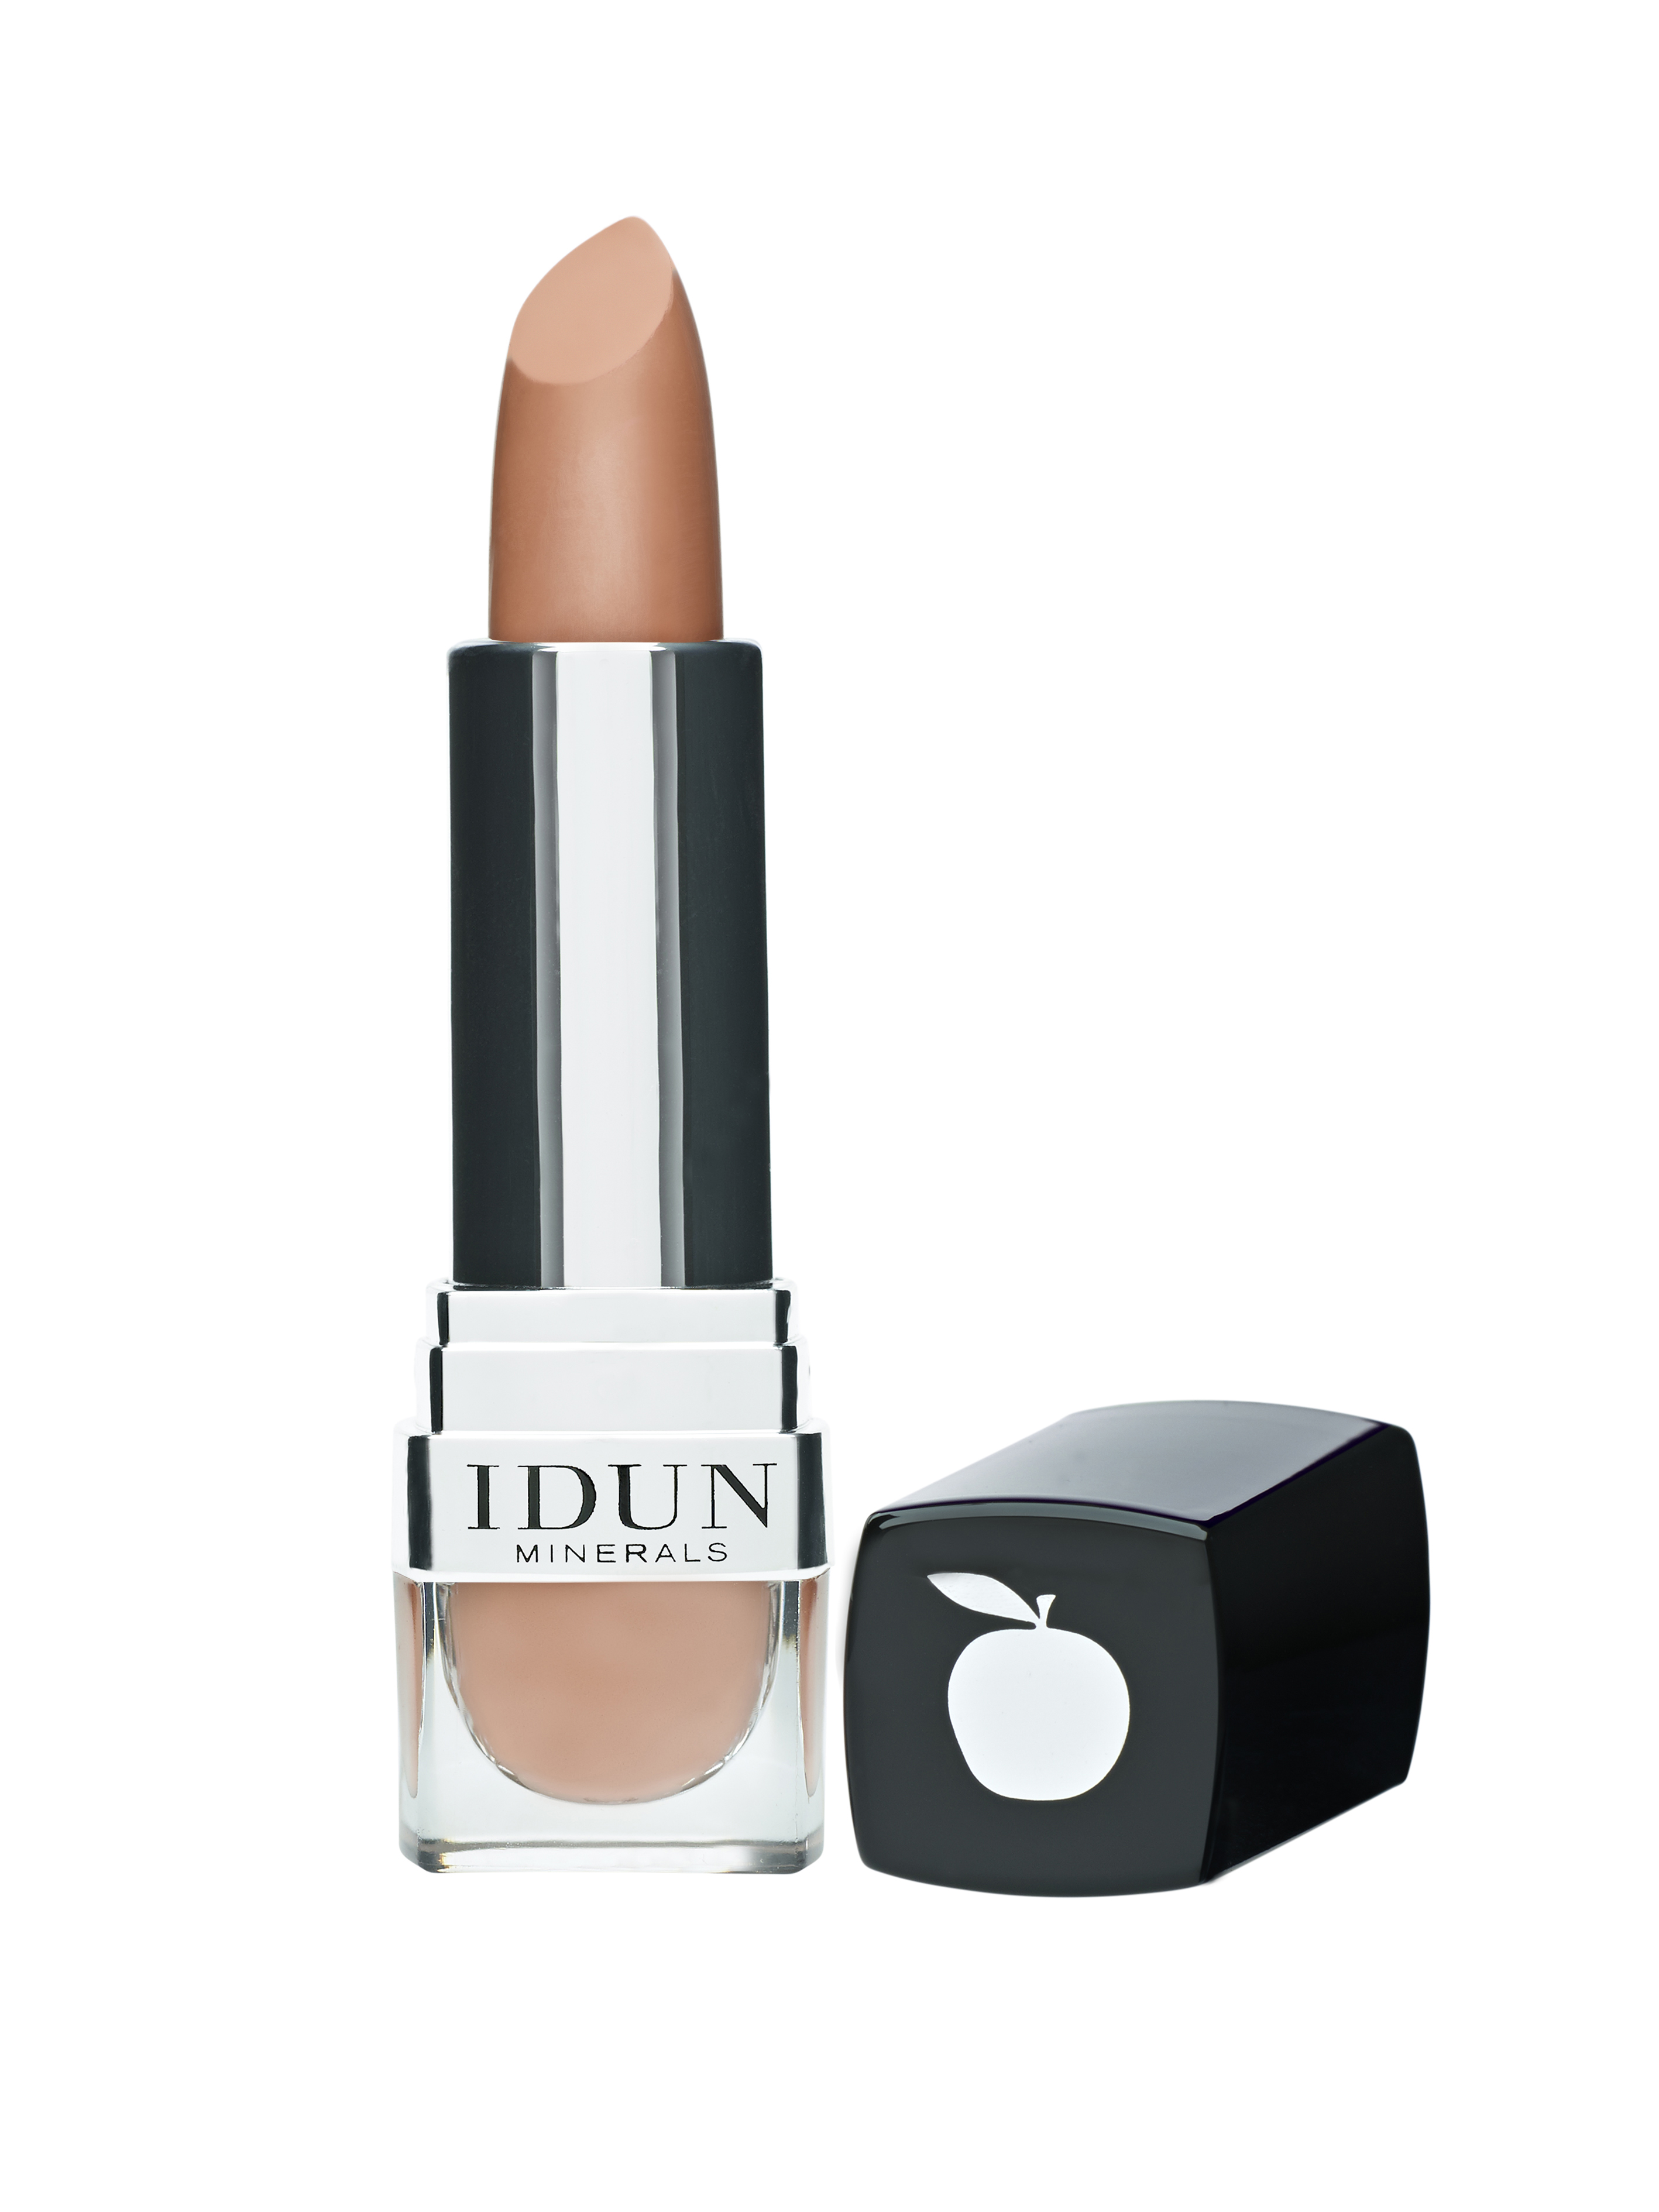 IDUN Minerals Lipstick Hjortron, 4g.